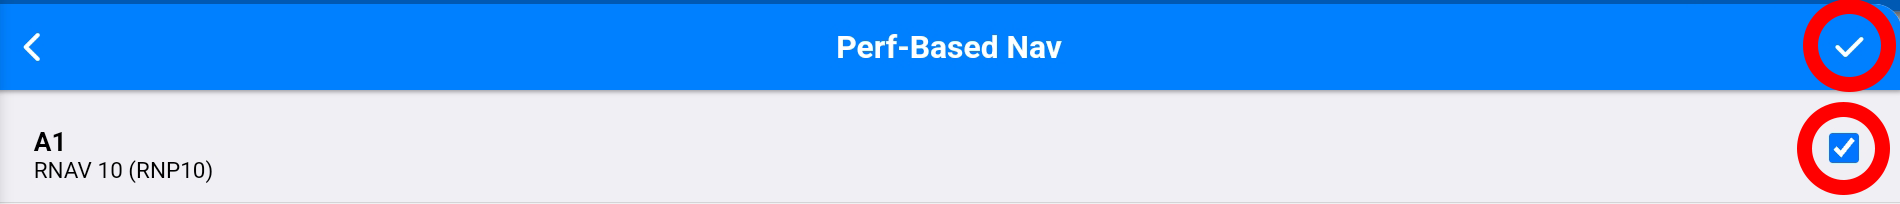 perf based nav